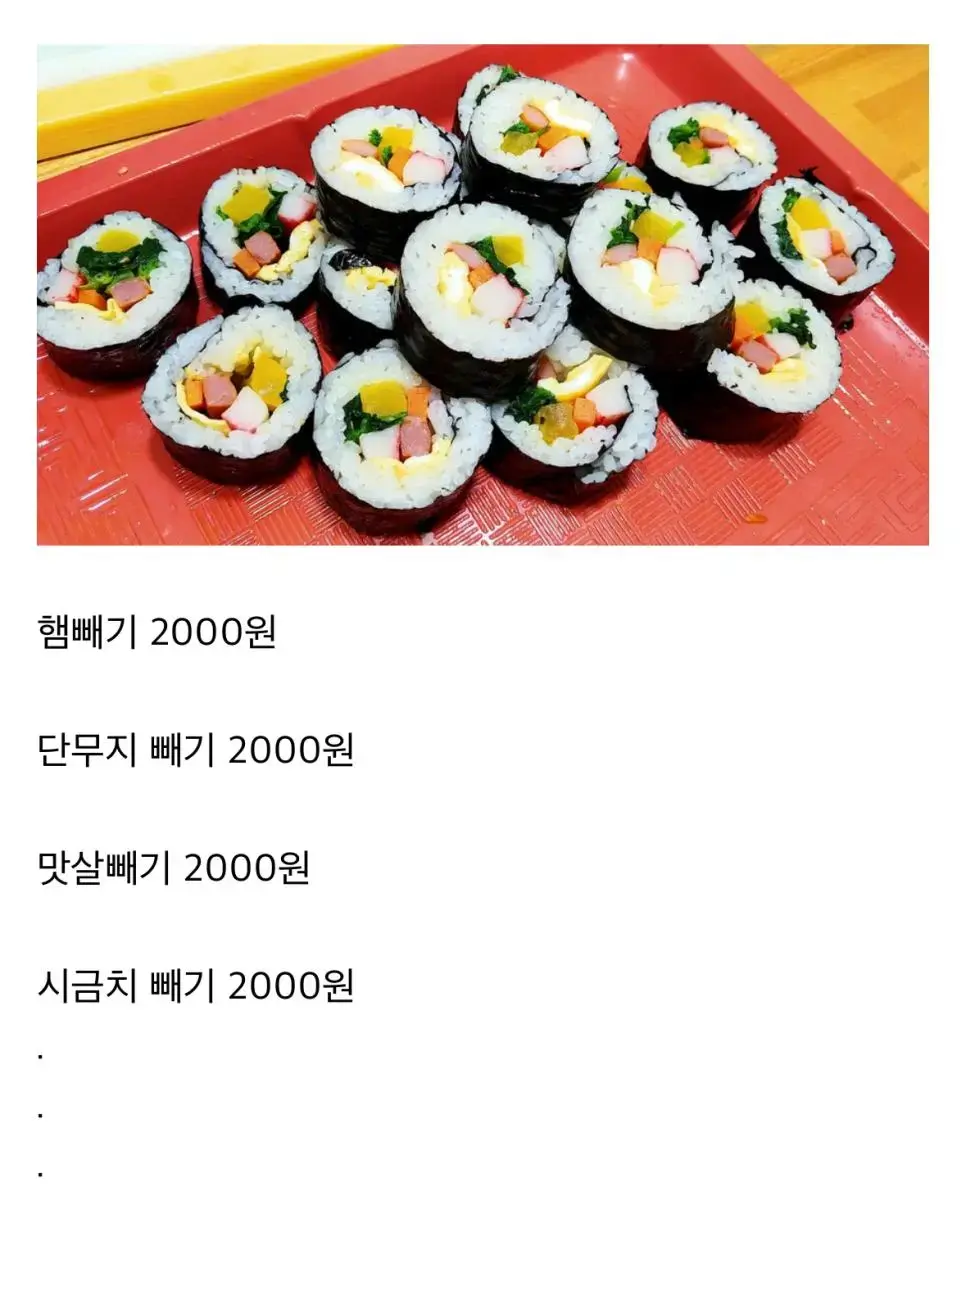 이제서야 납득이가는 김밥 가격 | mbong.kr 엠봉